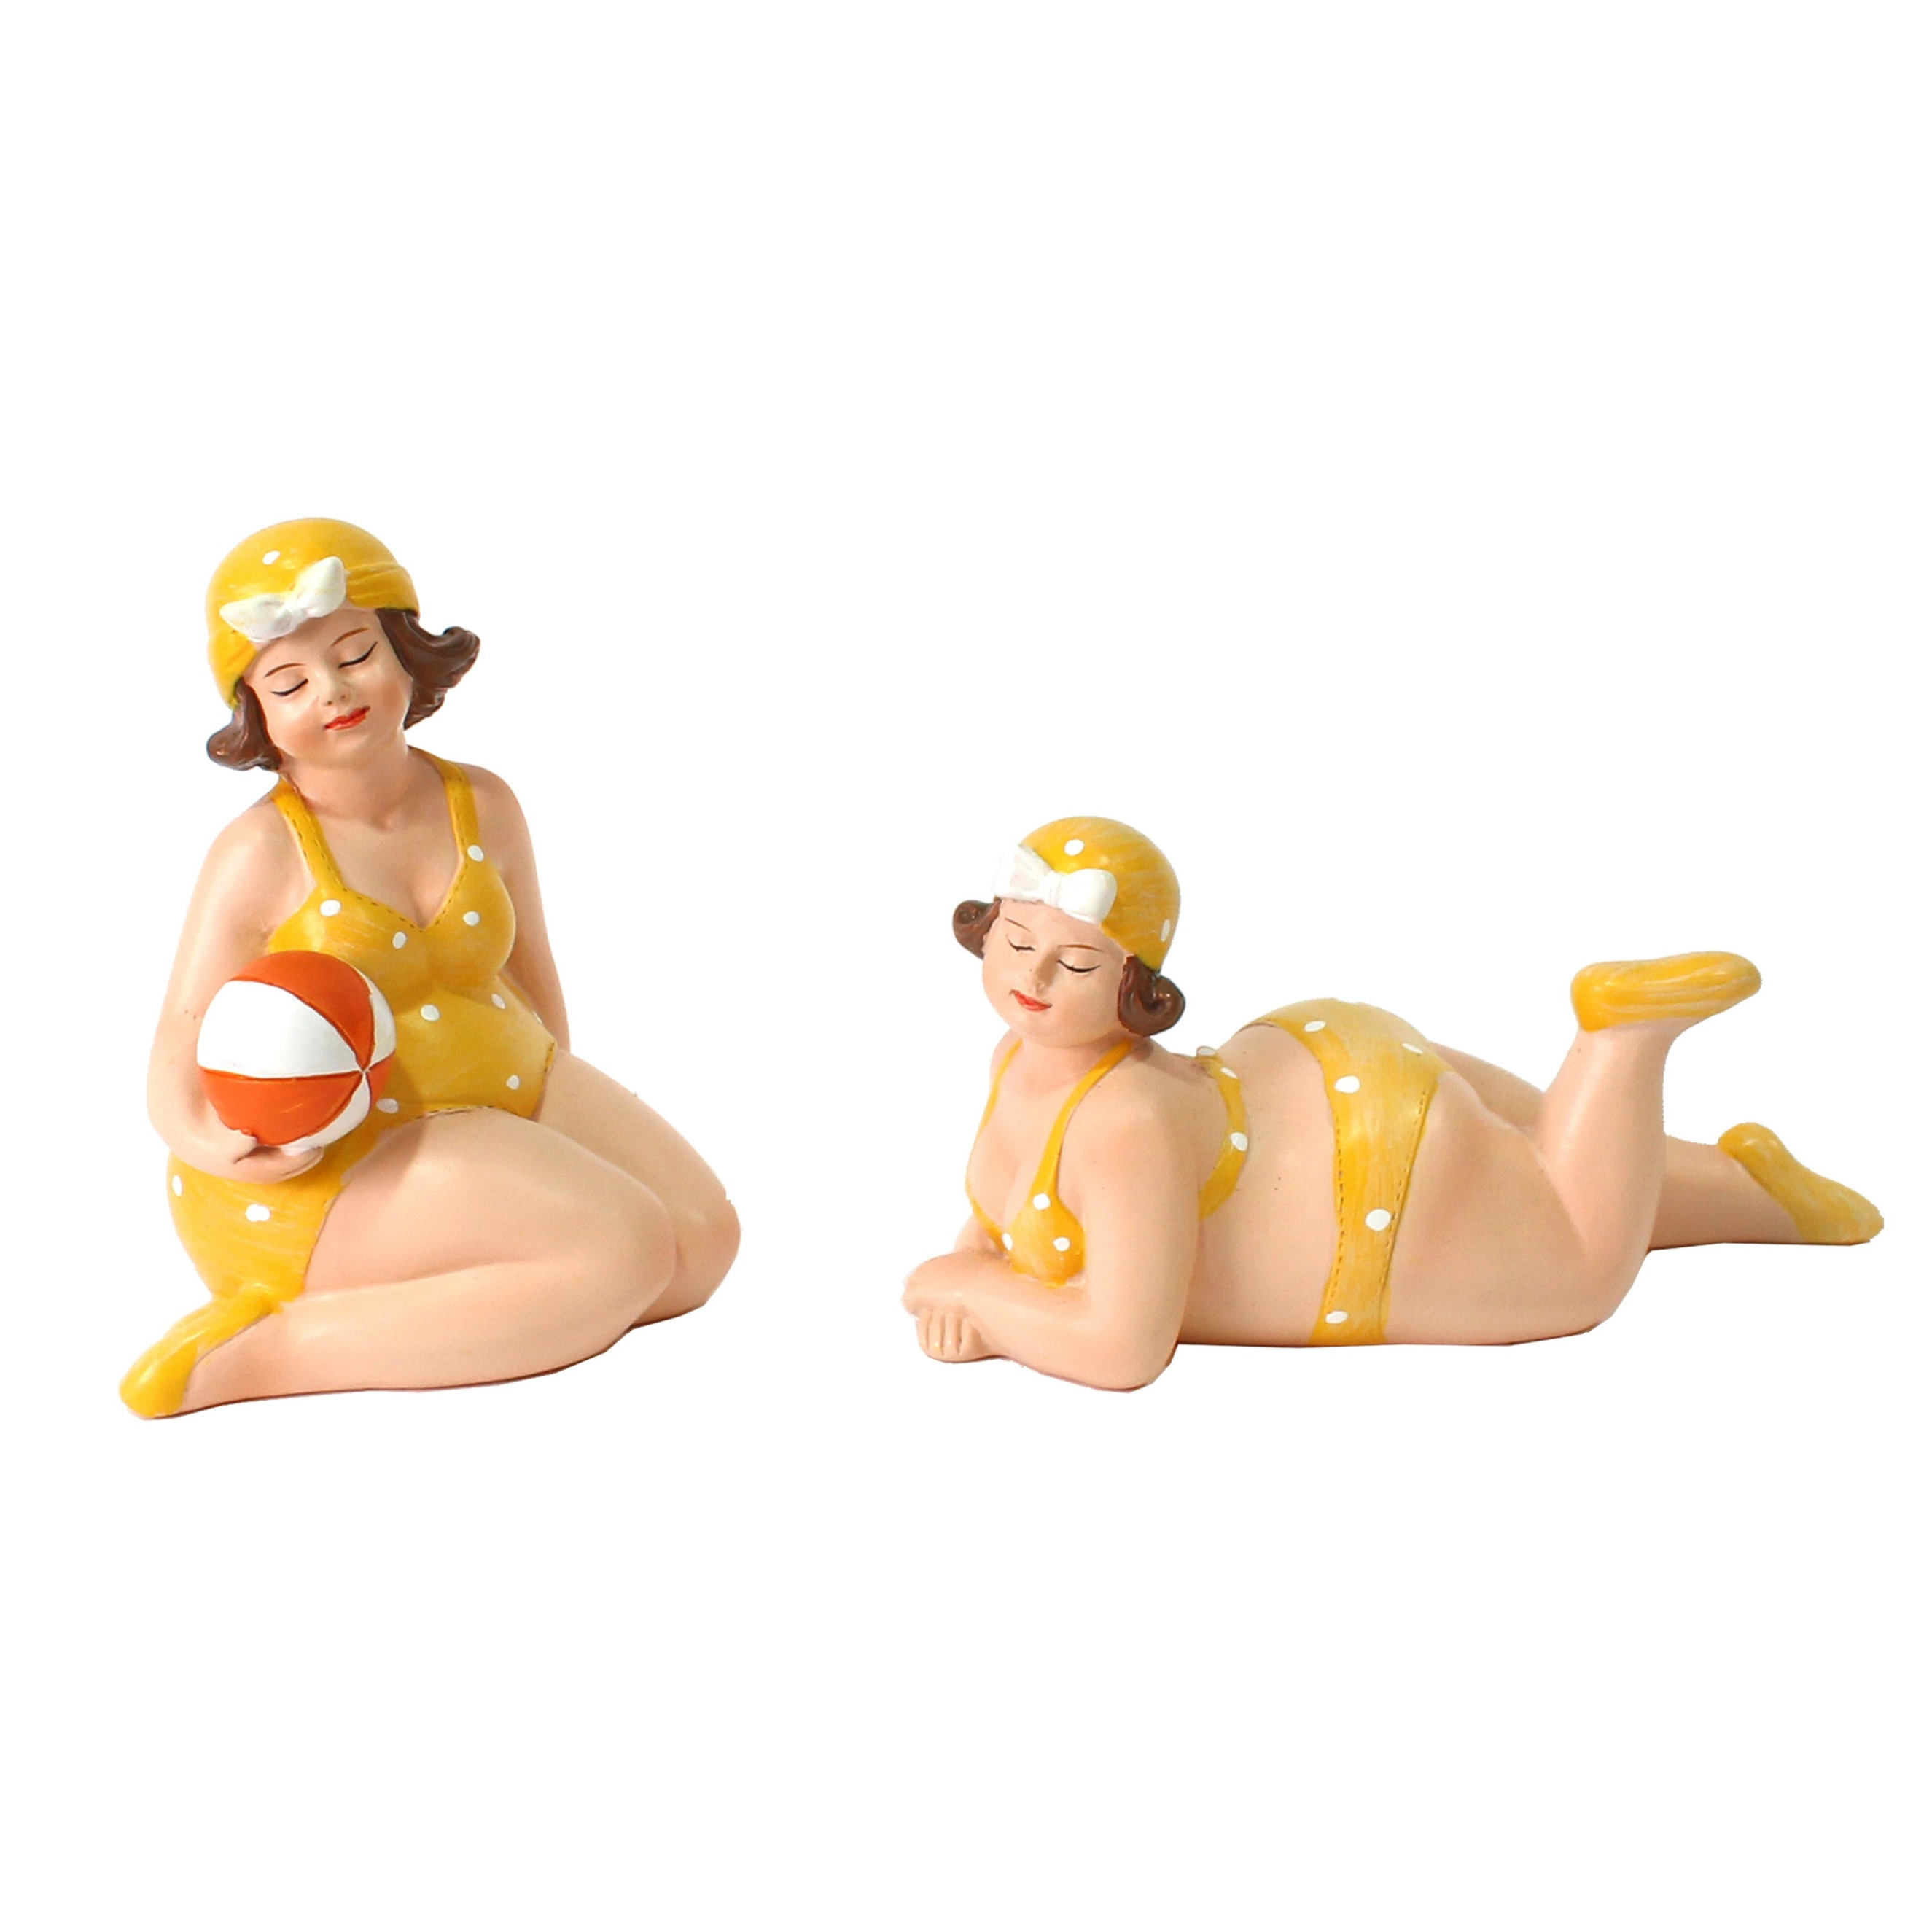 Woonkamer decoratie beeldjes set van 2 dikke dames geel badpak 11 cm